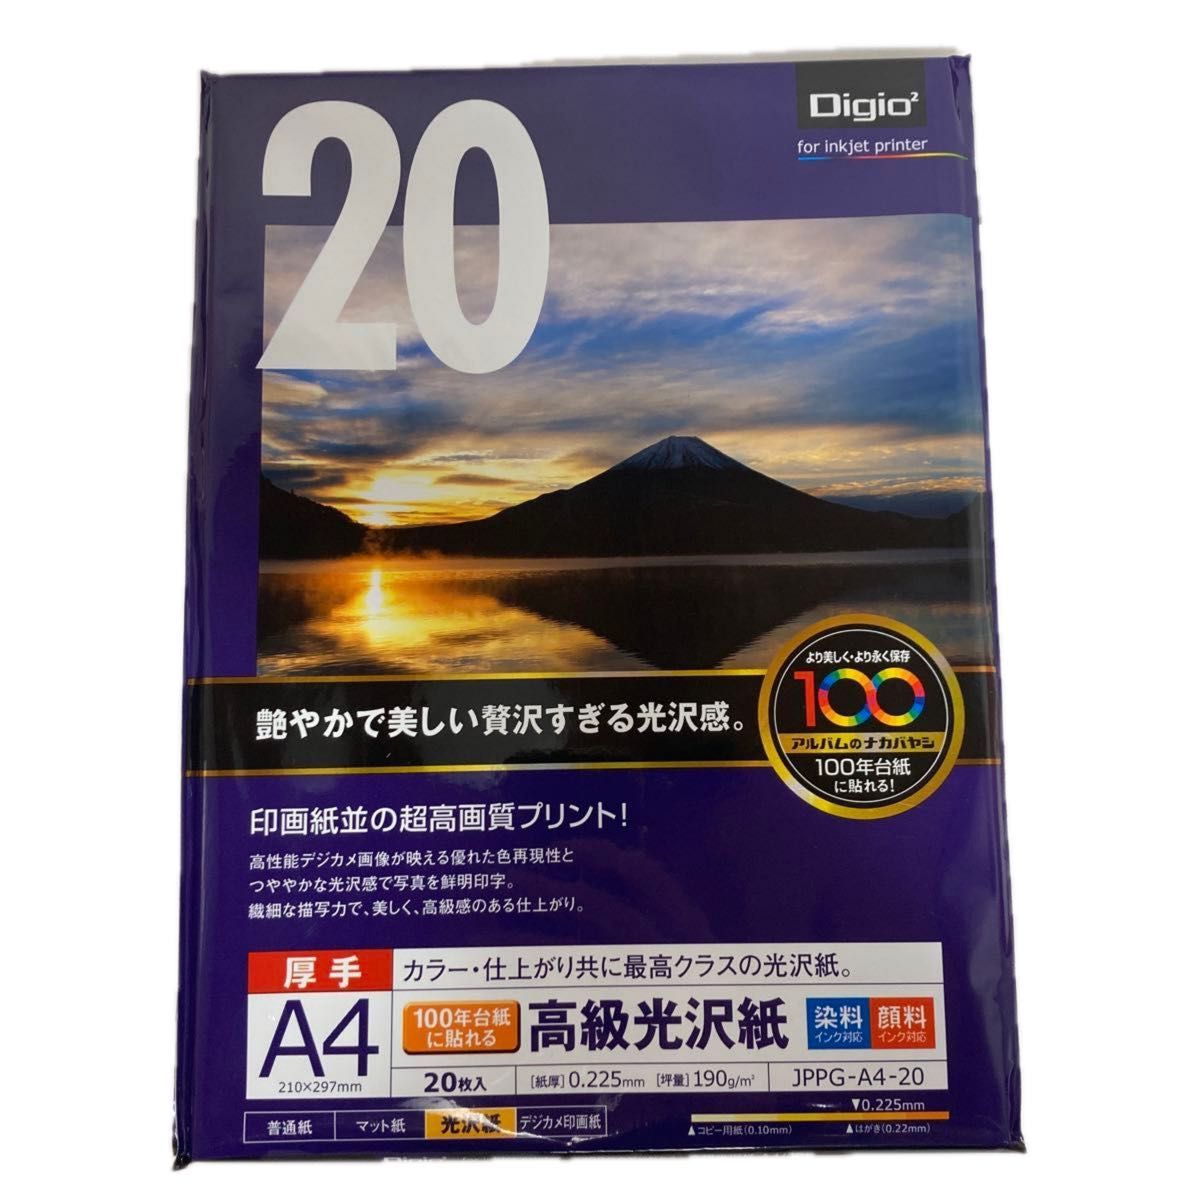 ナカバヤシ 写真用紙 高級光沢紙 光沢 厚手 A4判 20枚×4セット販売JPPG-A4-20